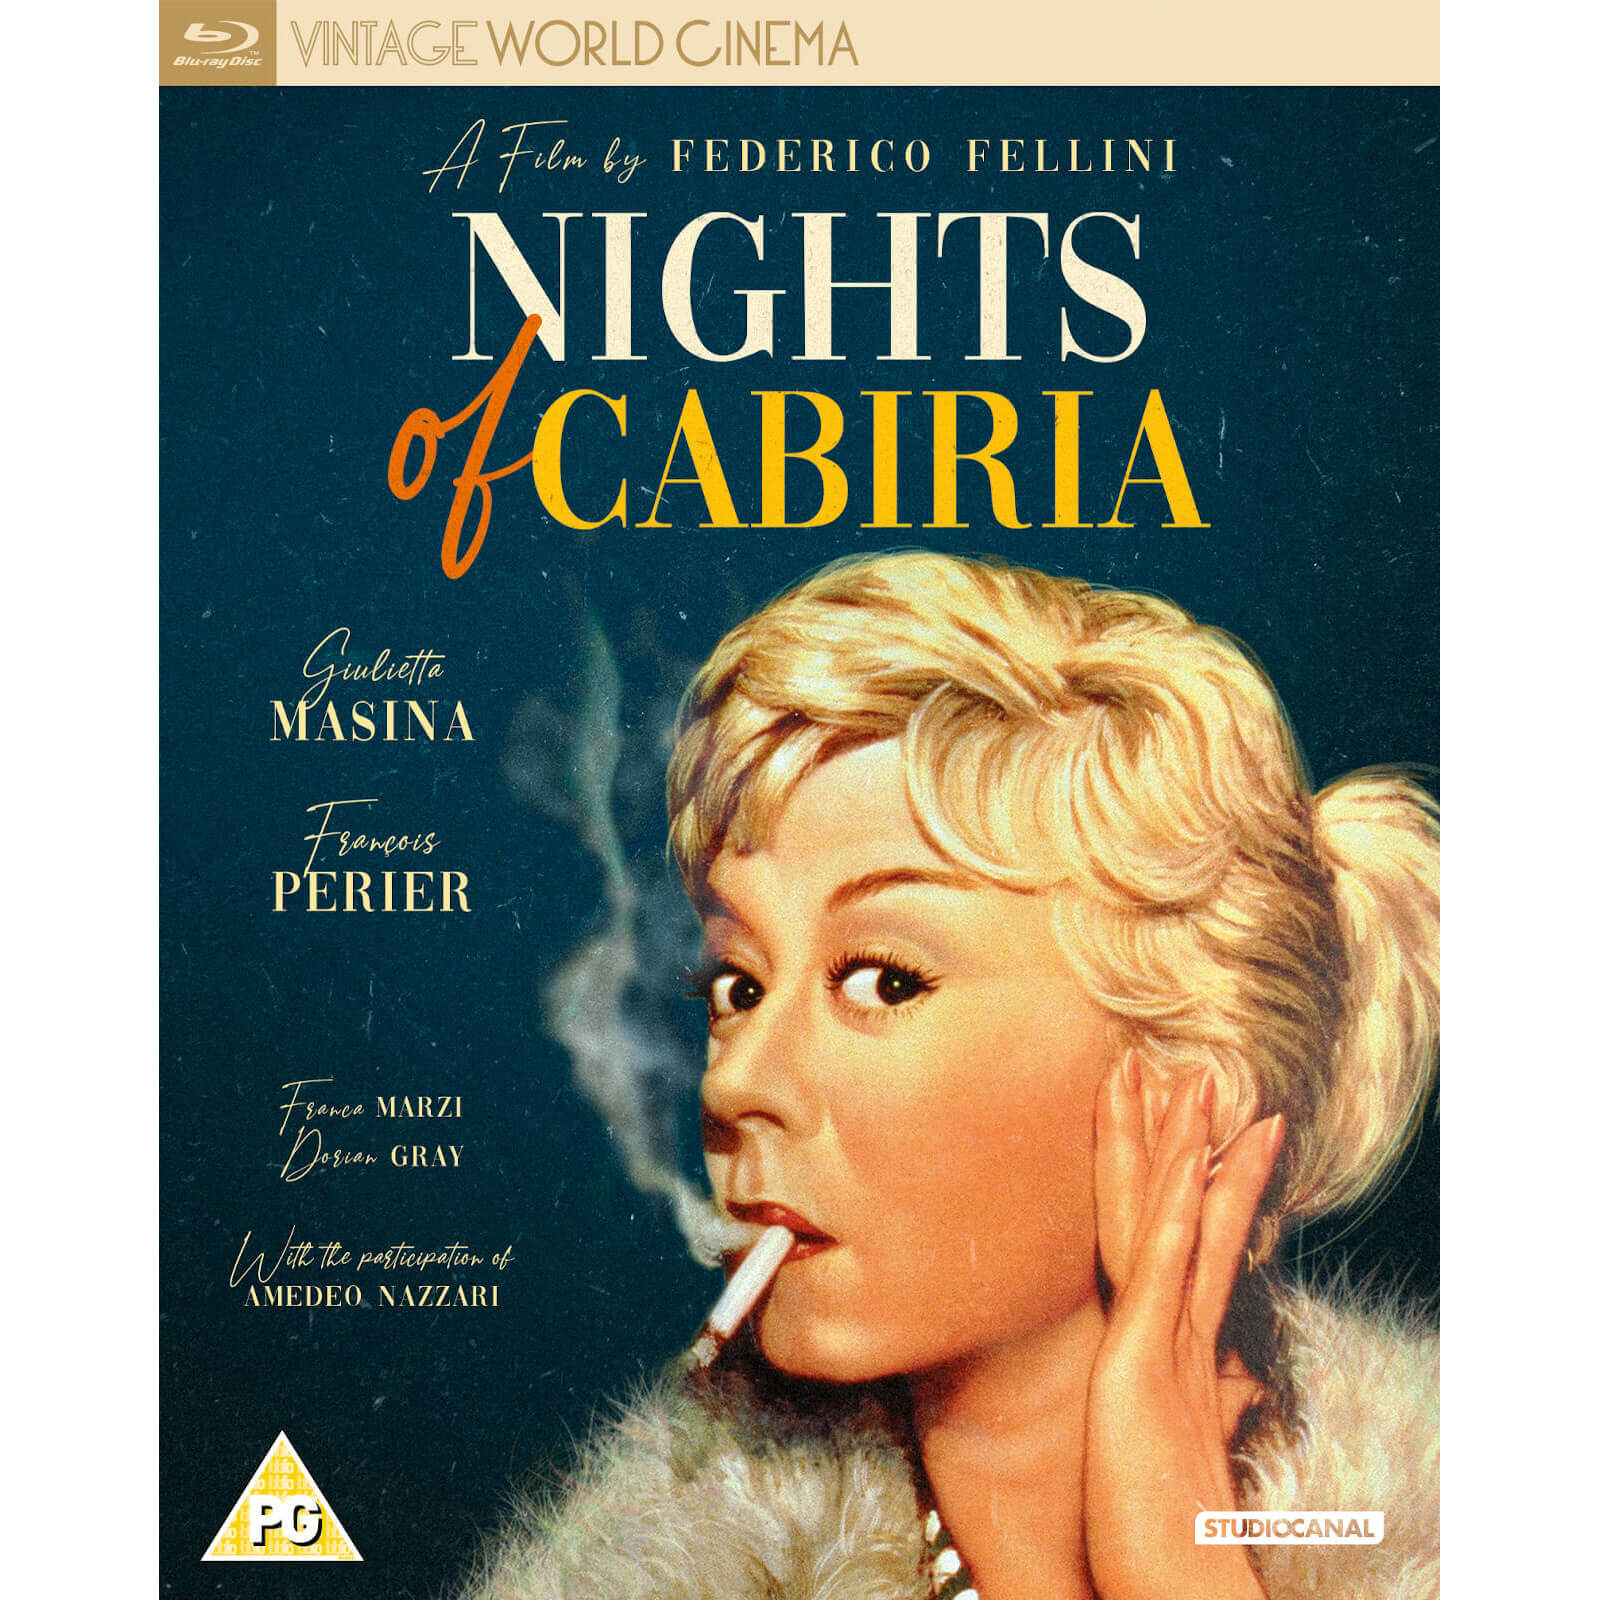 Die Nächte der Cabiria von Vintage World Cinema